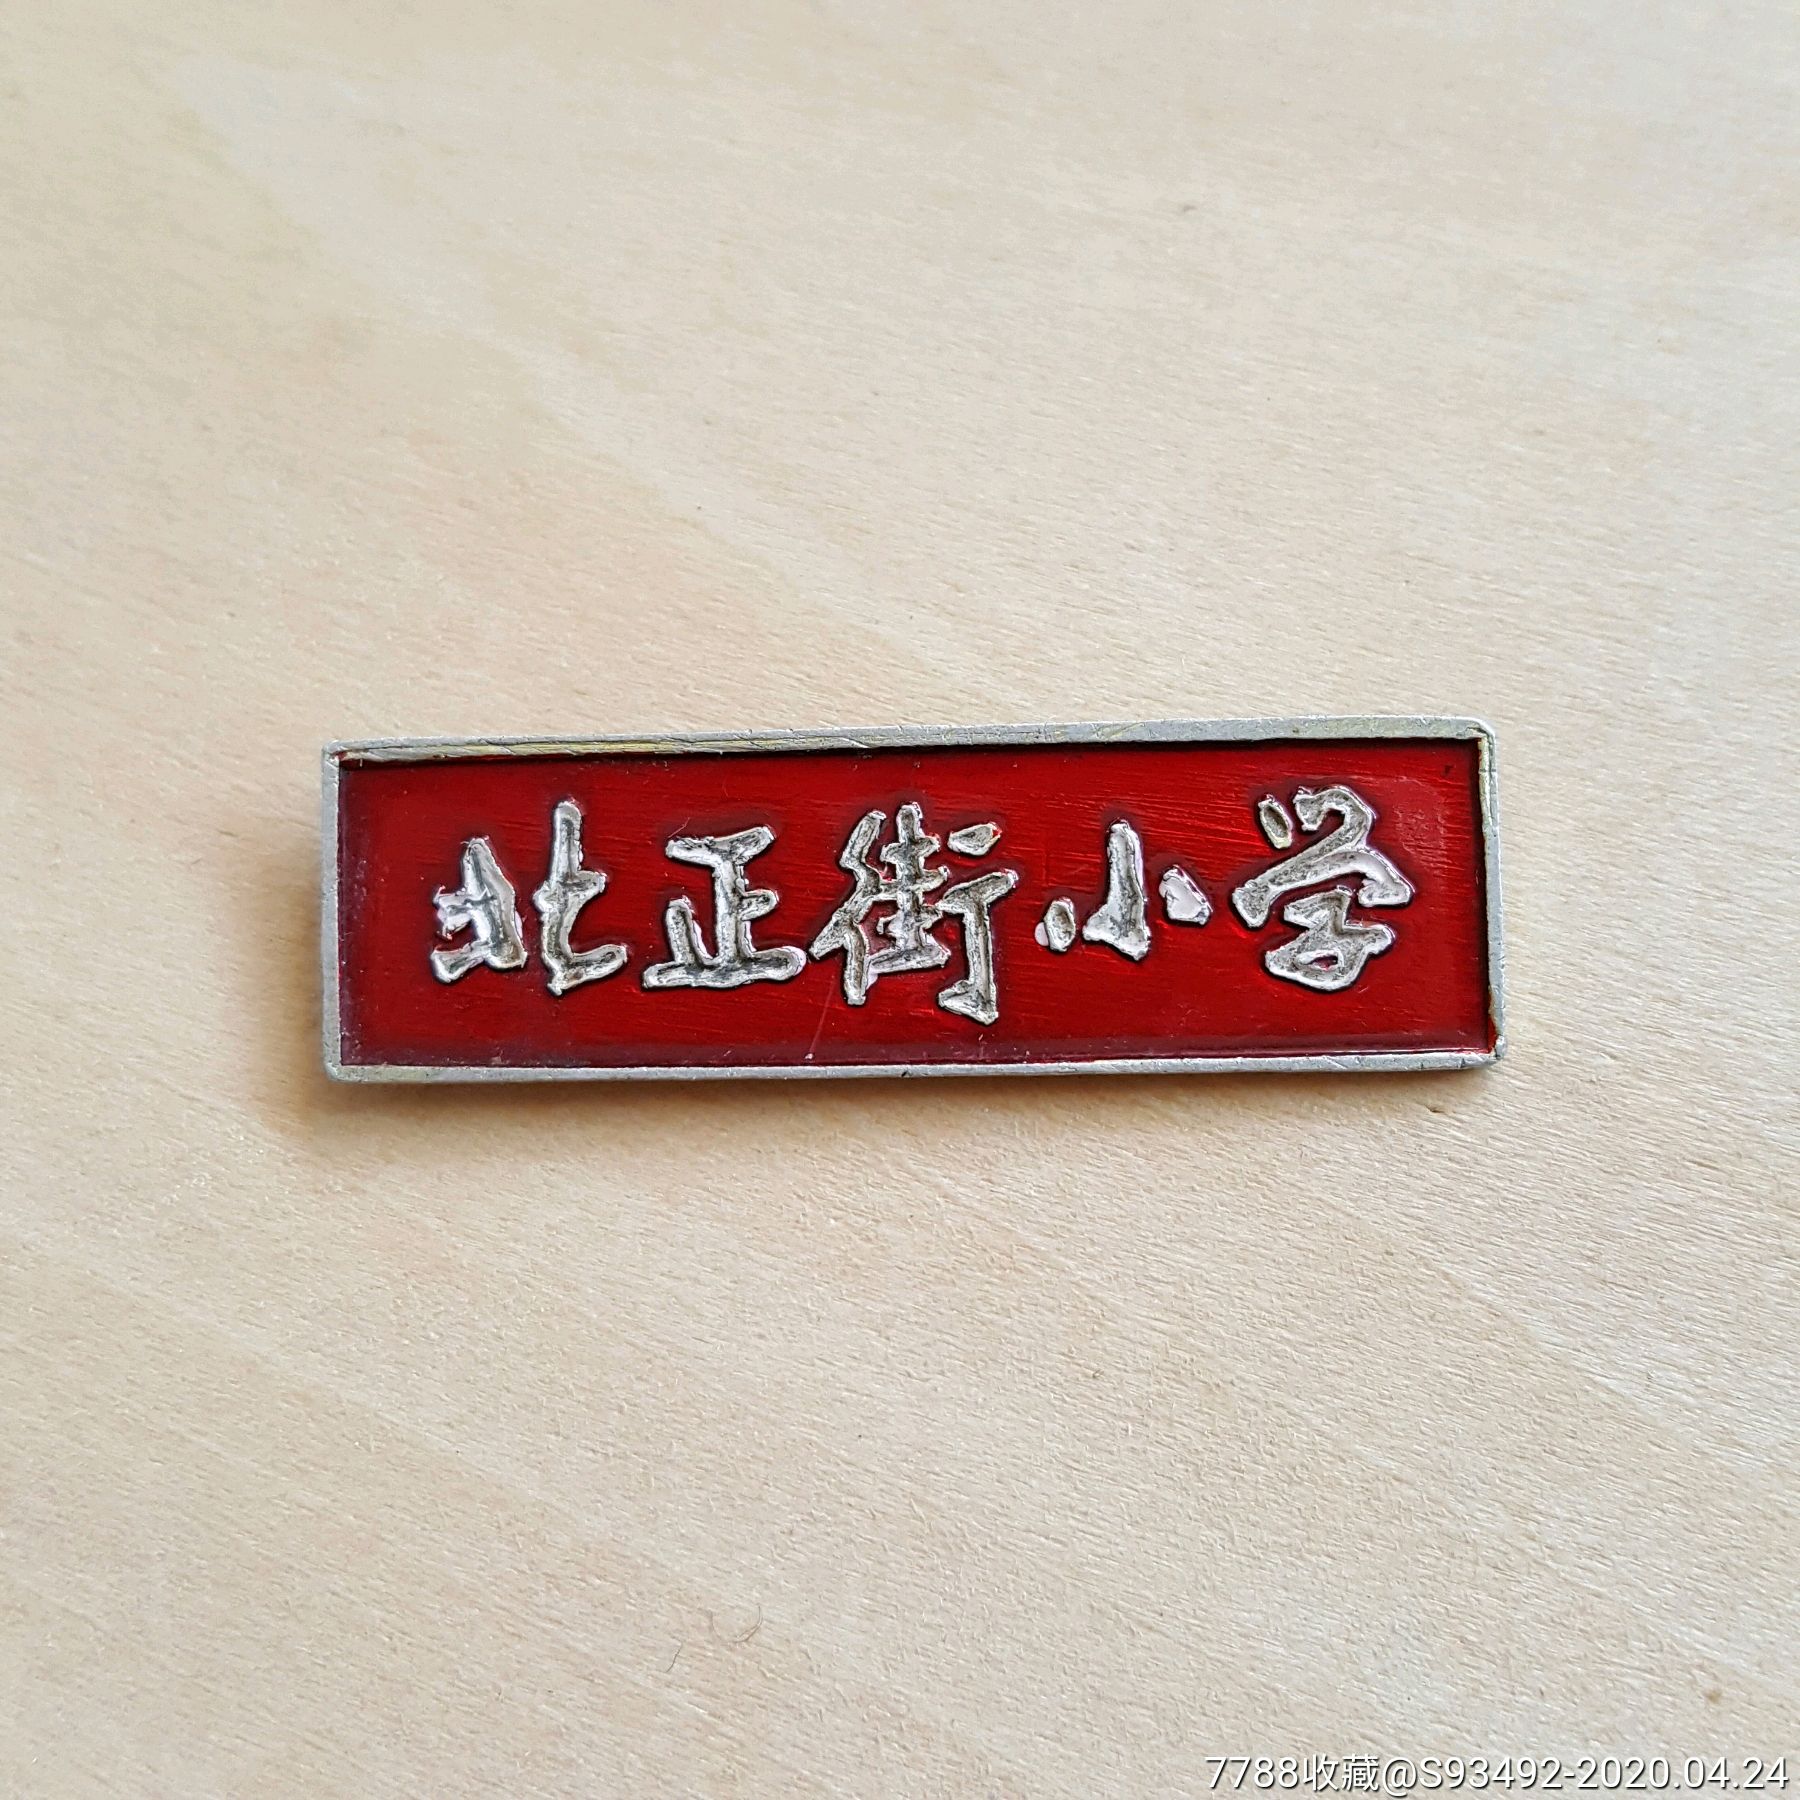 长沙北正街小学老校徽(缺扣针)